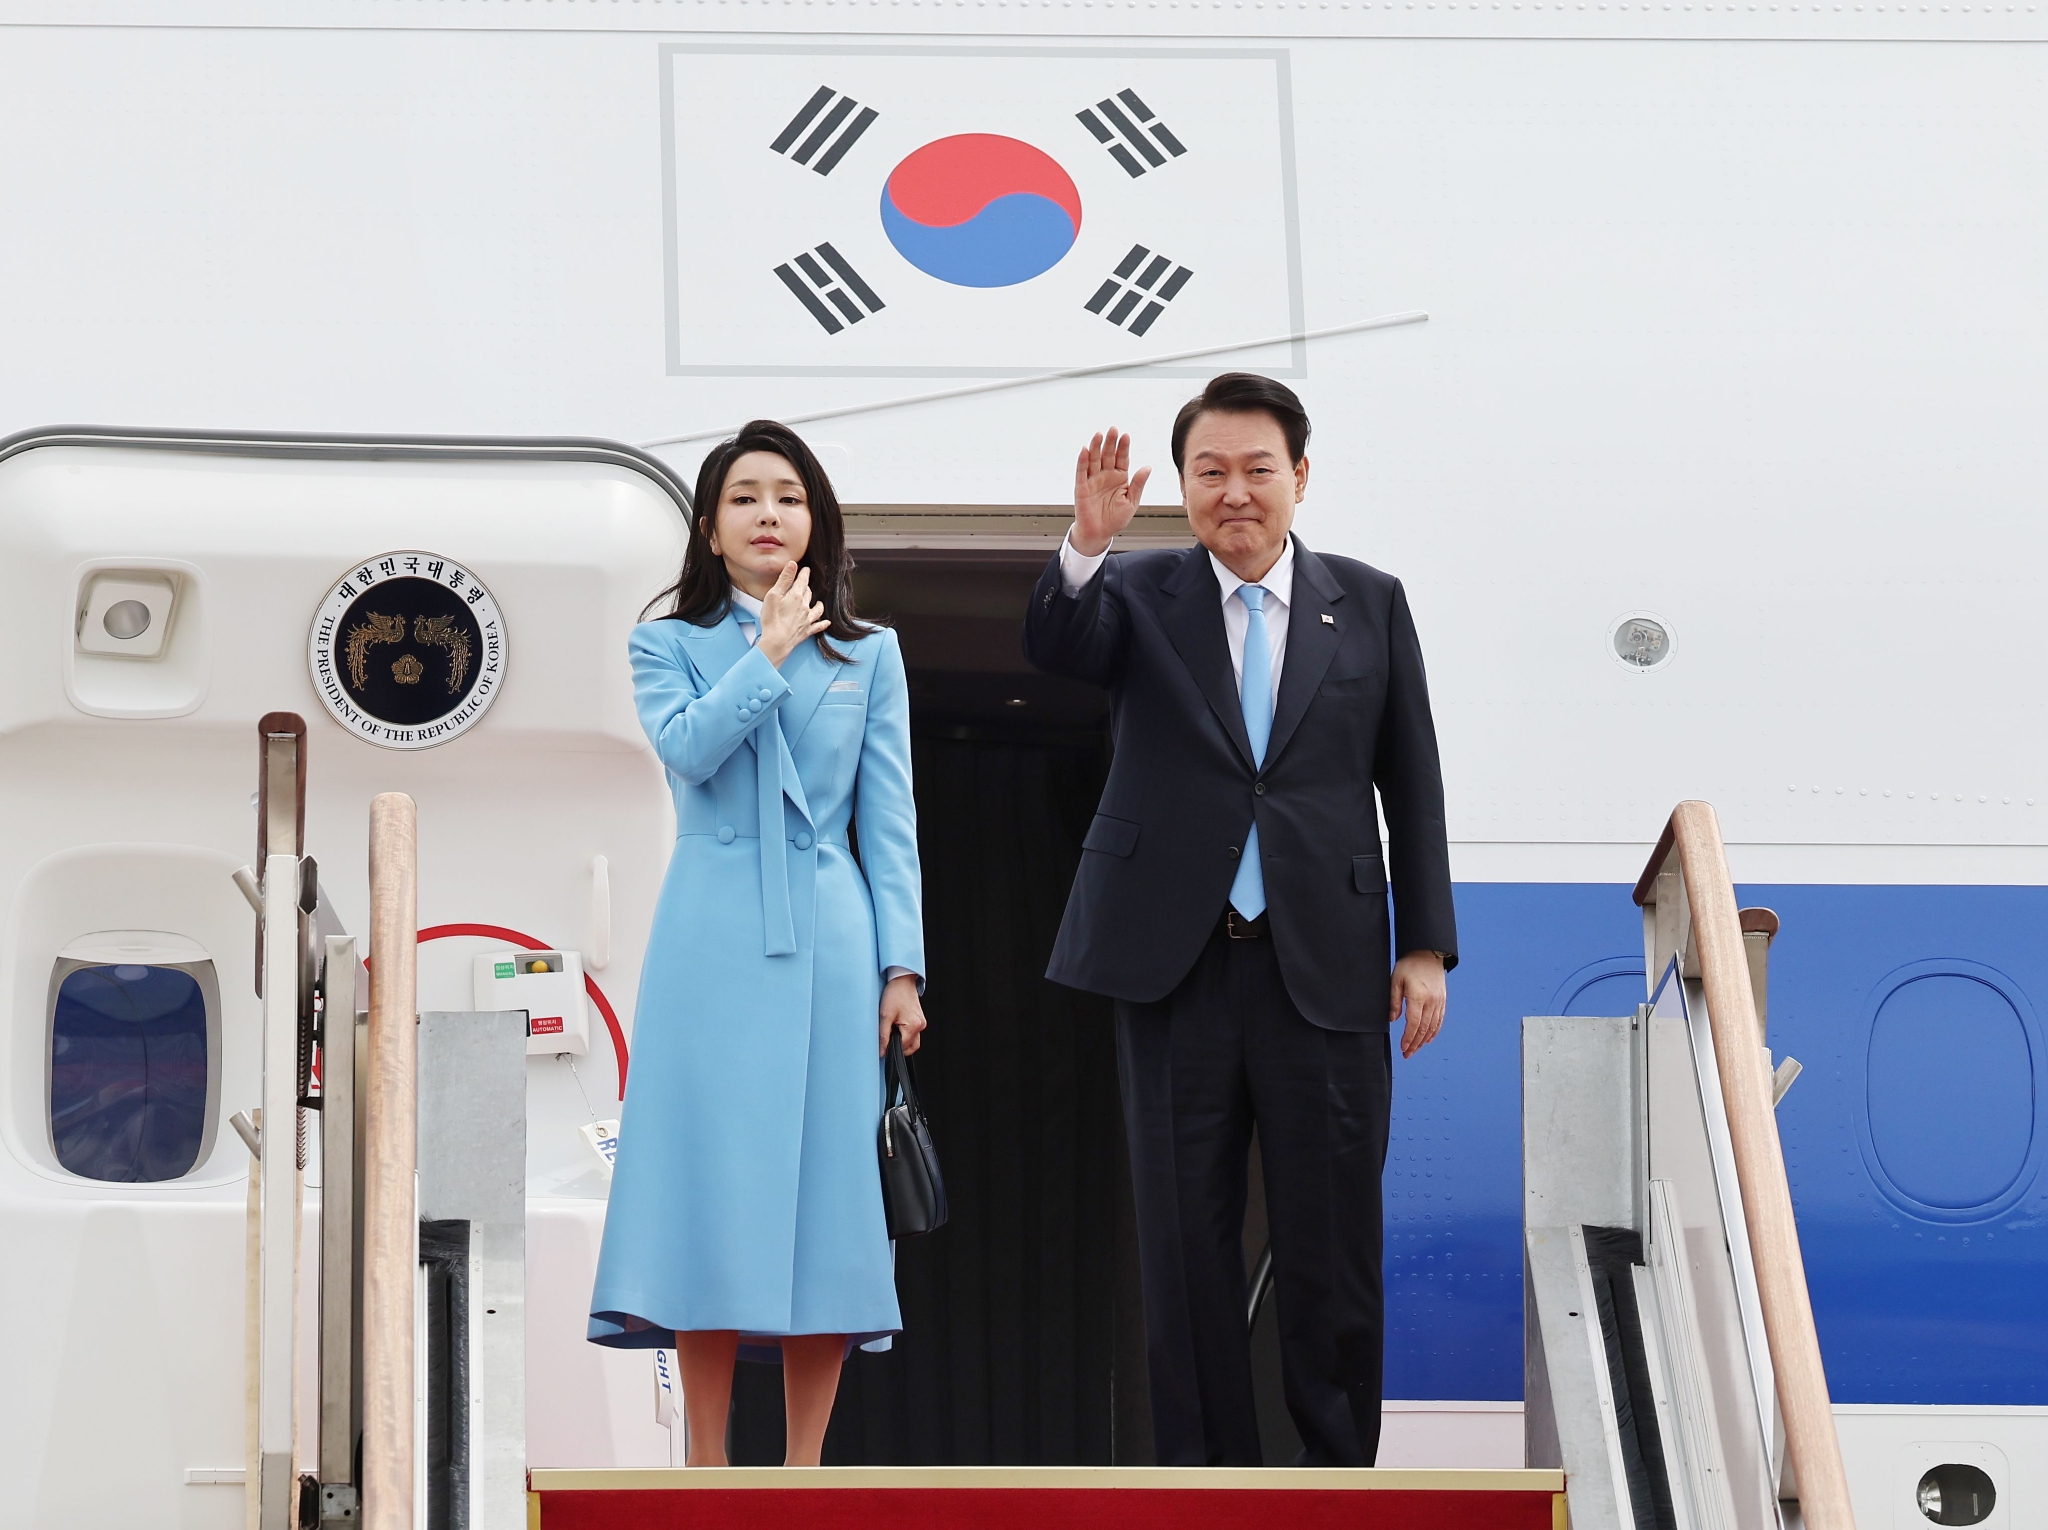 韩国对美国总统和朝鲜领导人通信一事表示欢迎 - 2019年6月23日, 俄罗斯卫星通讯社